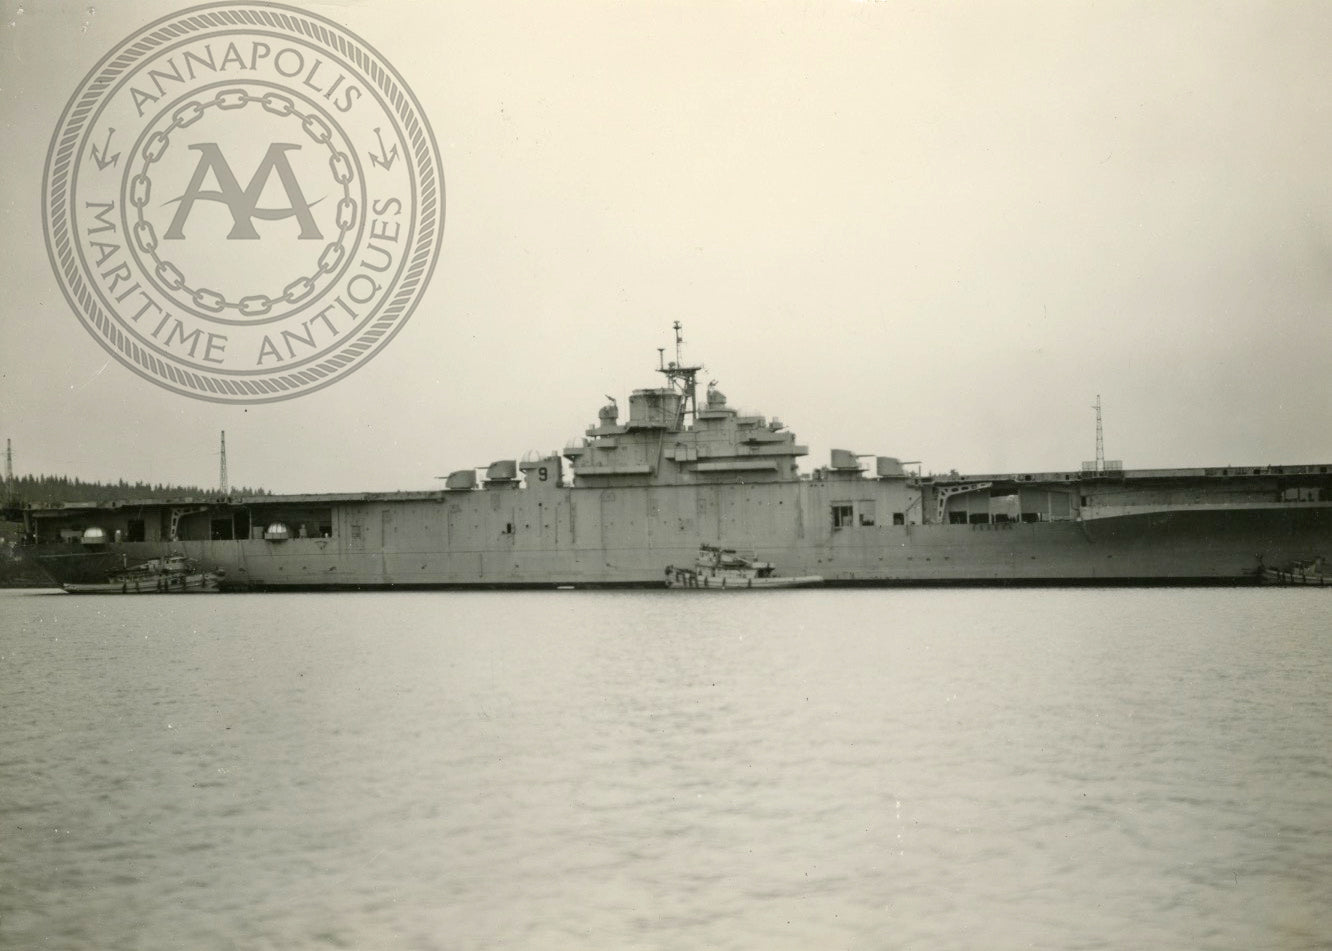 USS Essex (CV-9)